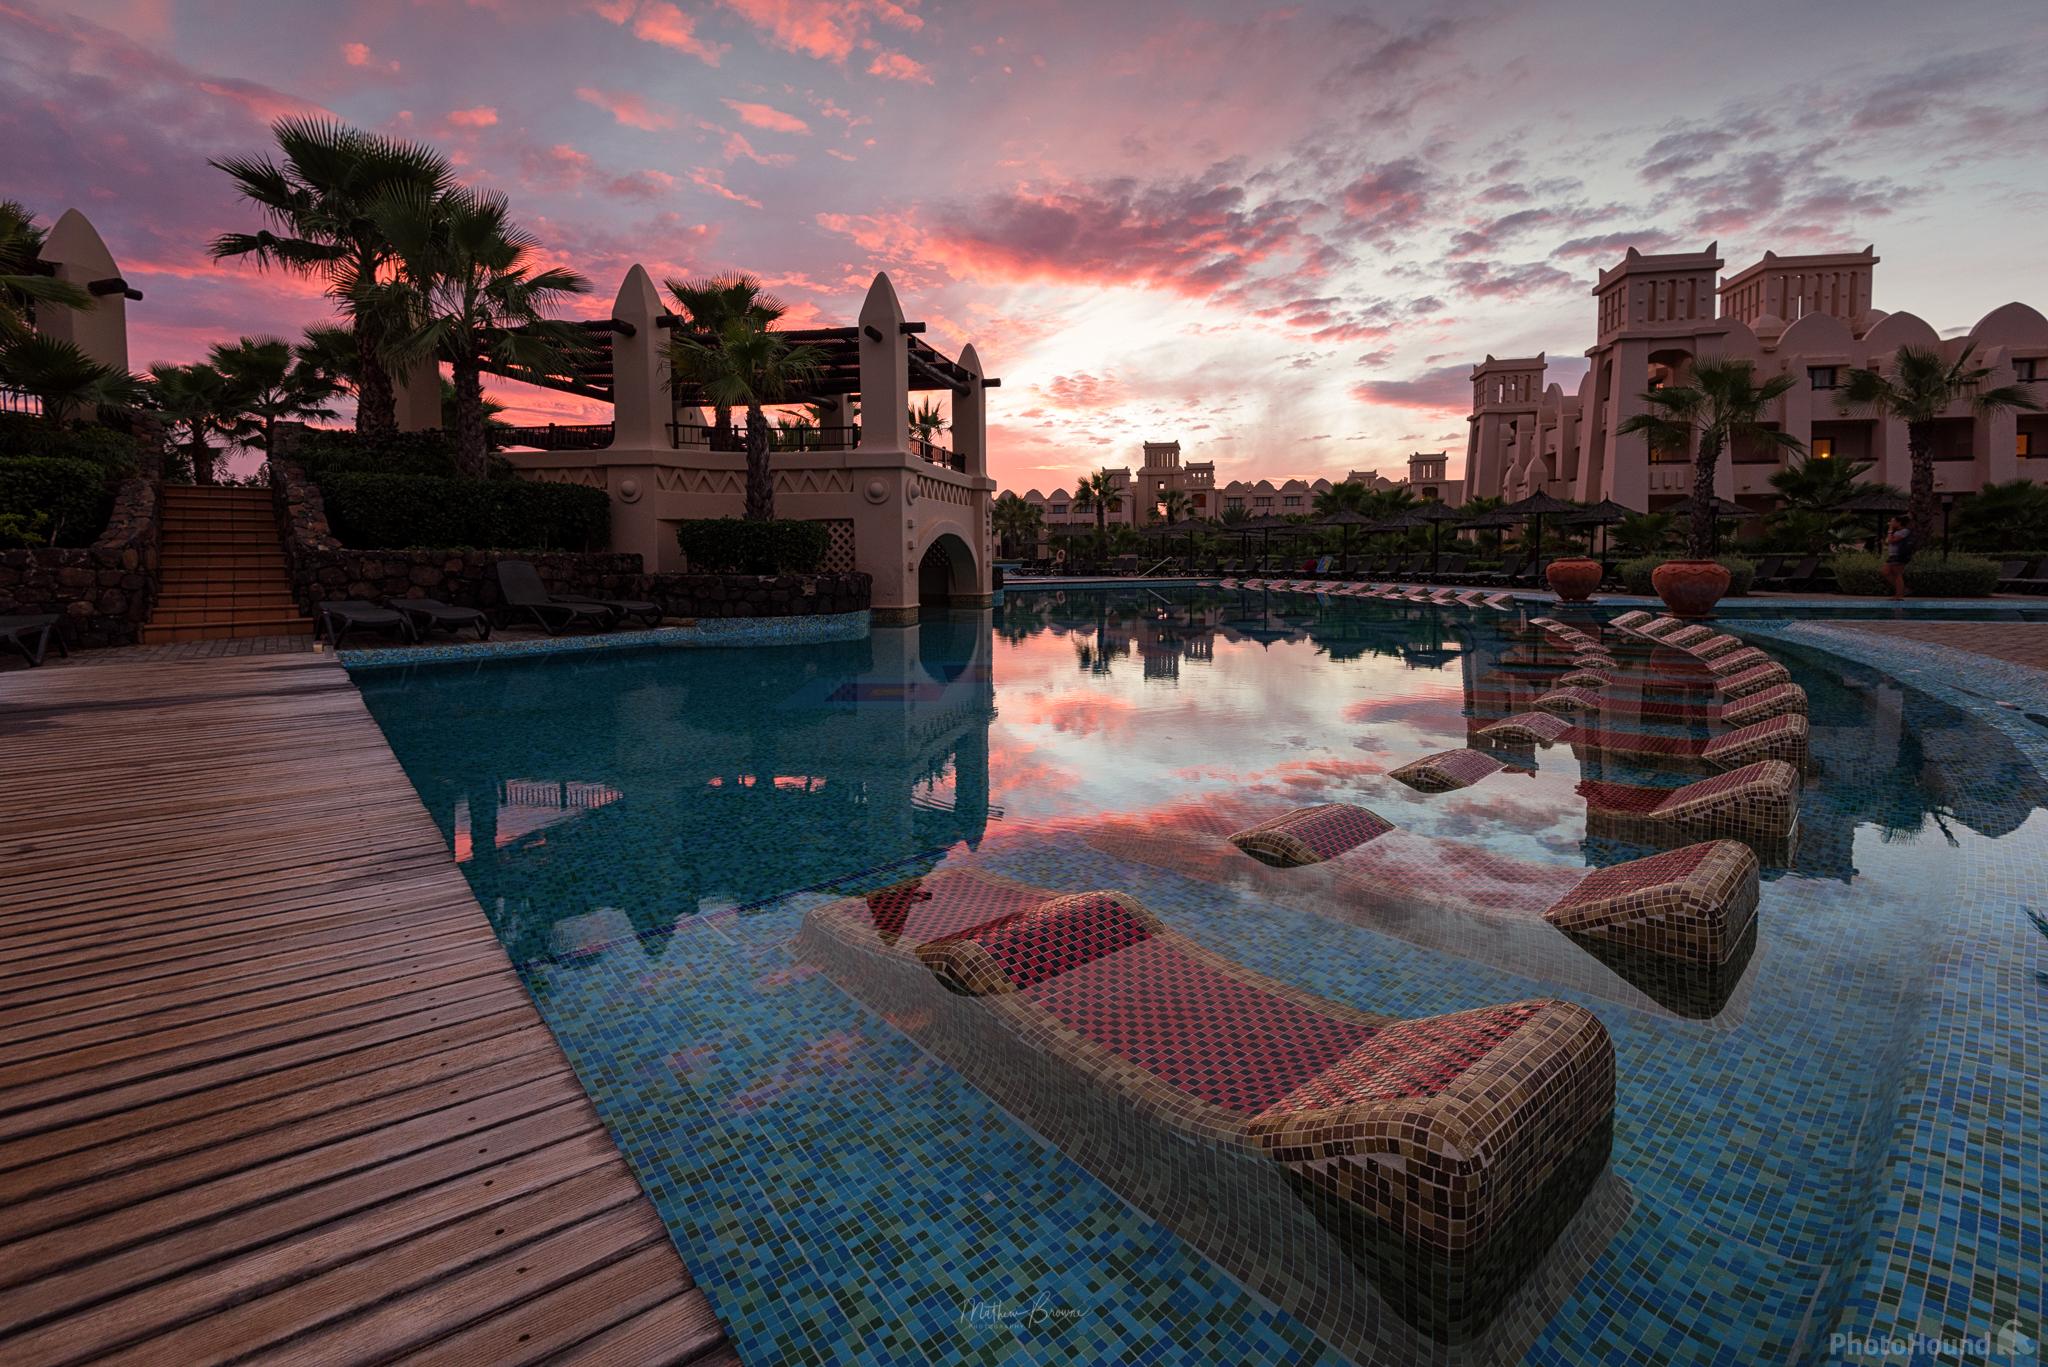 Image of Riu Touareg Resort by Mathew Browne